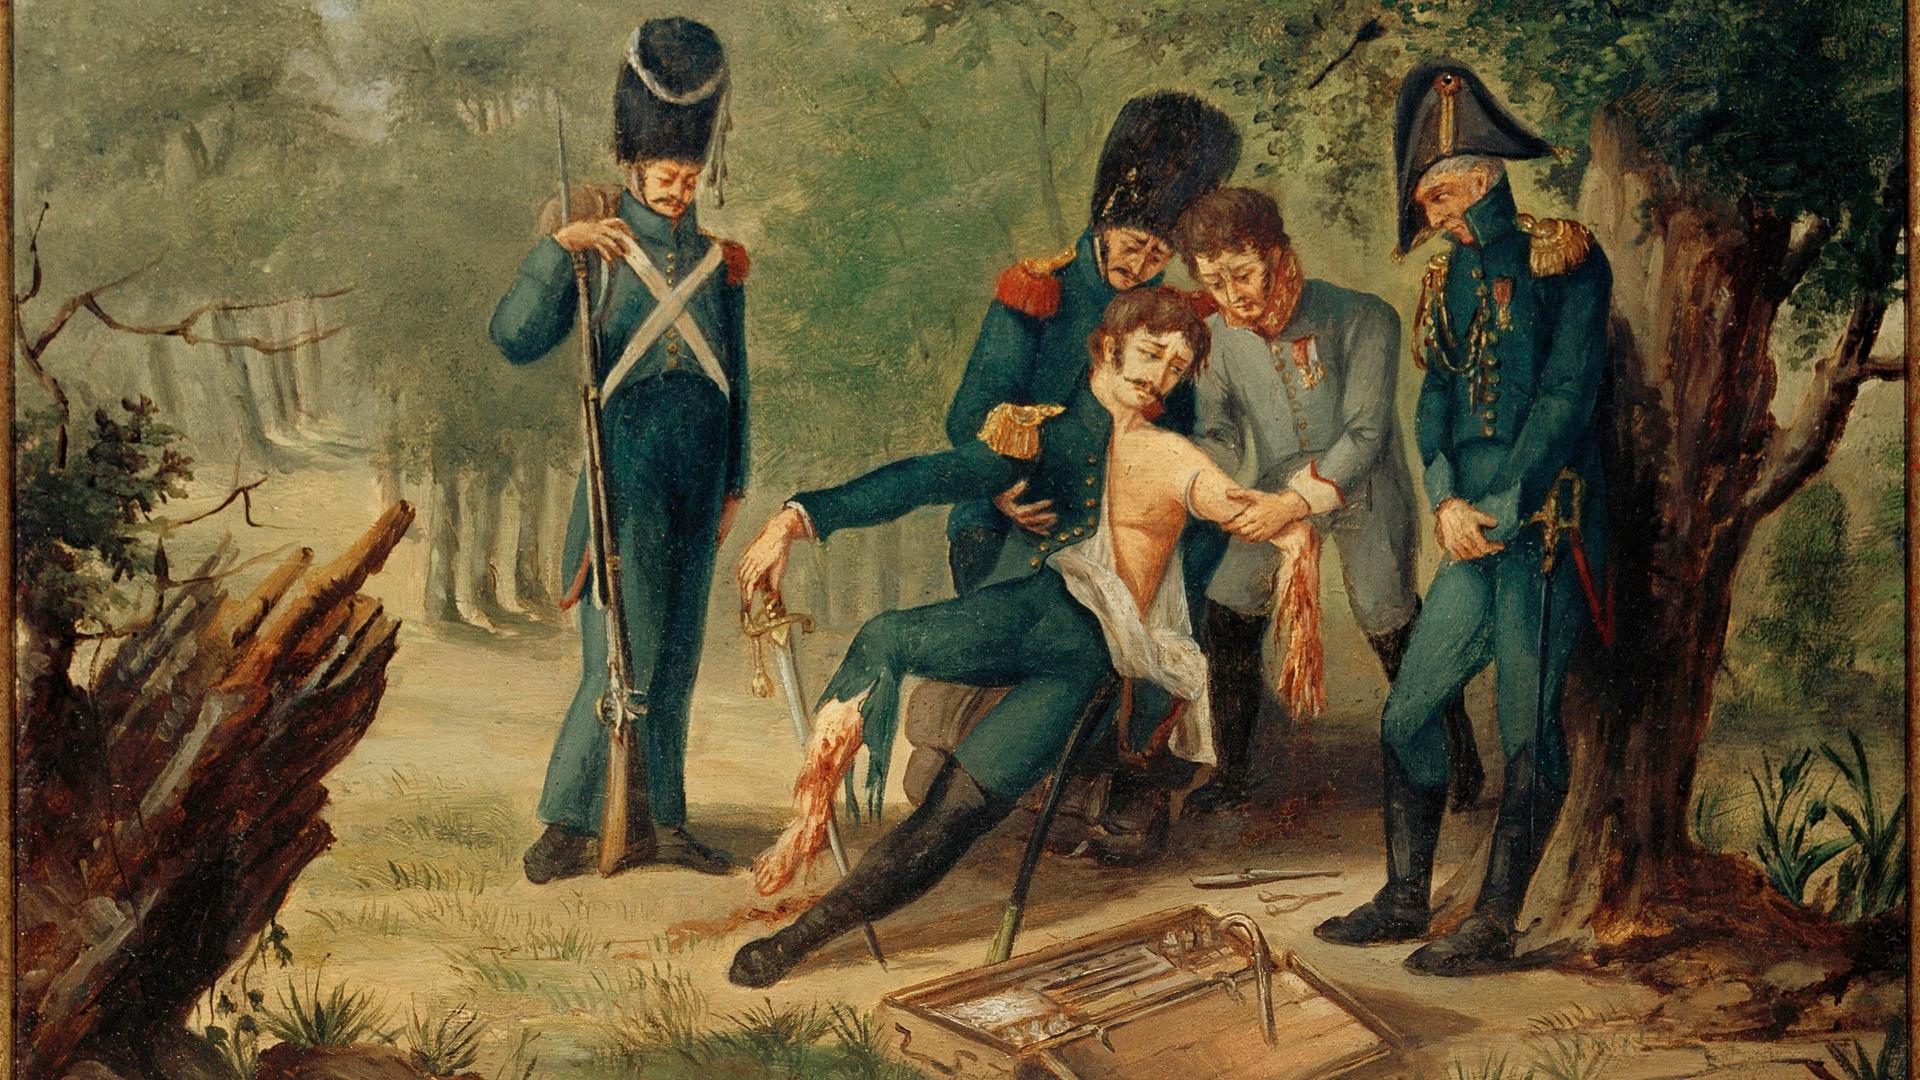 Ein Ölgemälde zeigt, wie der französische Militärarzt Dominique Jean Larrey im Oktober 1813 einem verwundeten Befehlshaber Gliedmaßen amputiert. Wer zuerst behandelt wurde, das entschied Larrey allein nach medizinischen Kriterien - weshalb er auch als Erfinder der Triage gilt. 